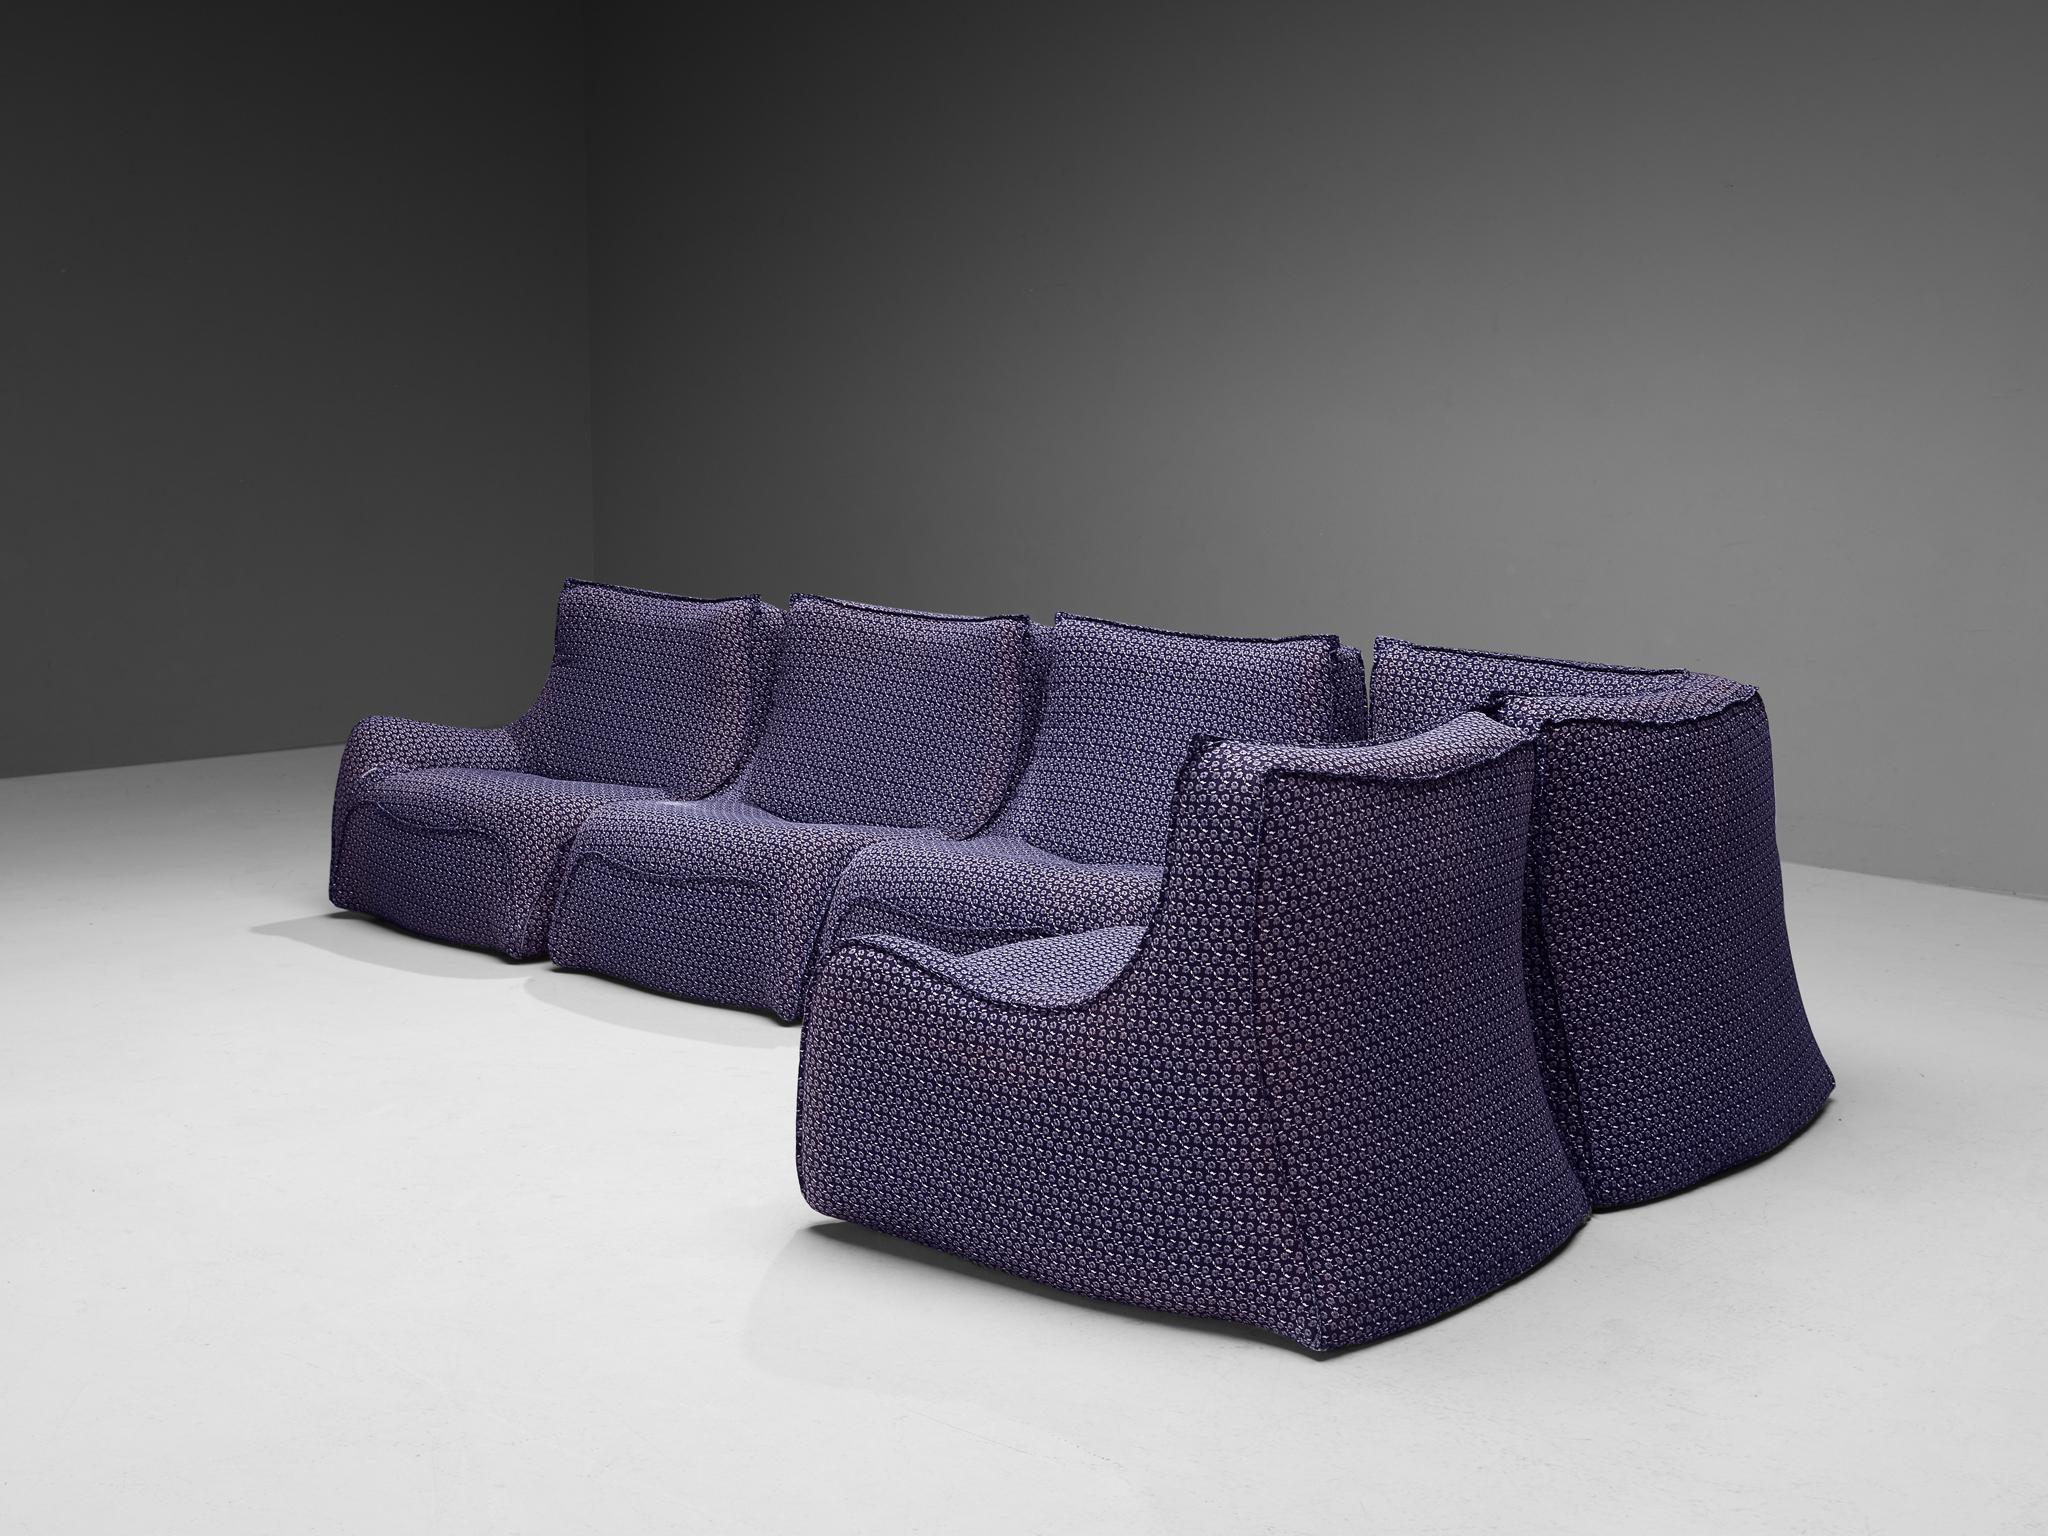 Fabric Rare Bernard Govin for Ligne Roset Sectional Sofa in Purple Upholstery For Sale